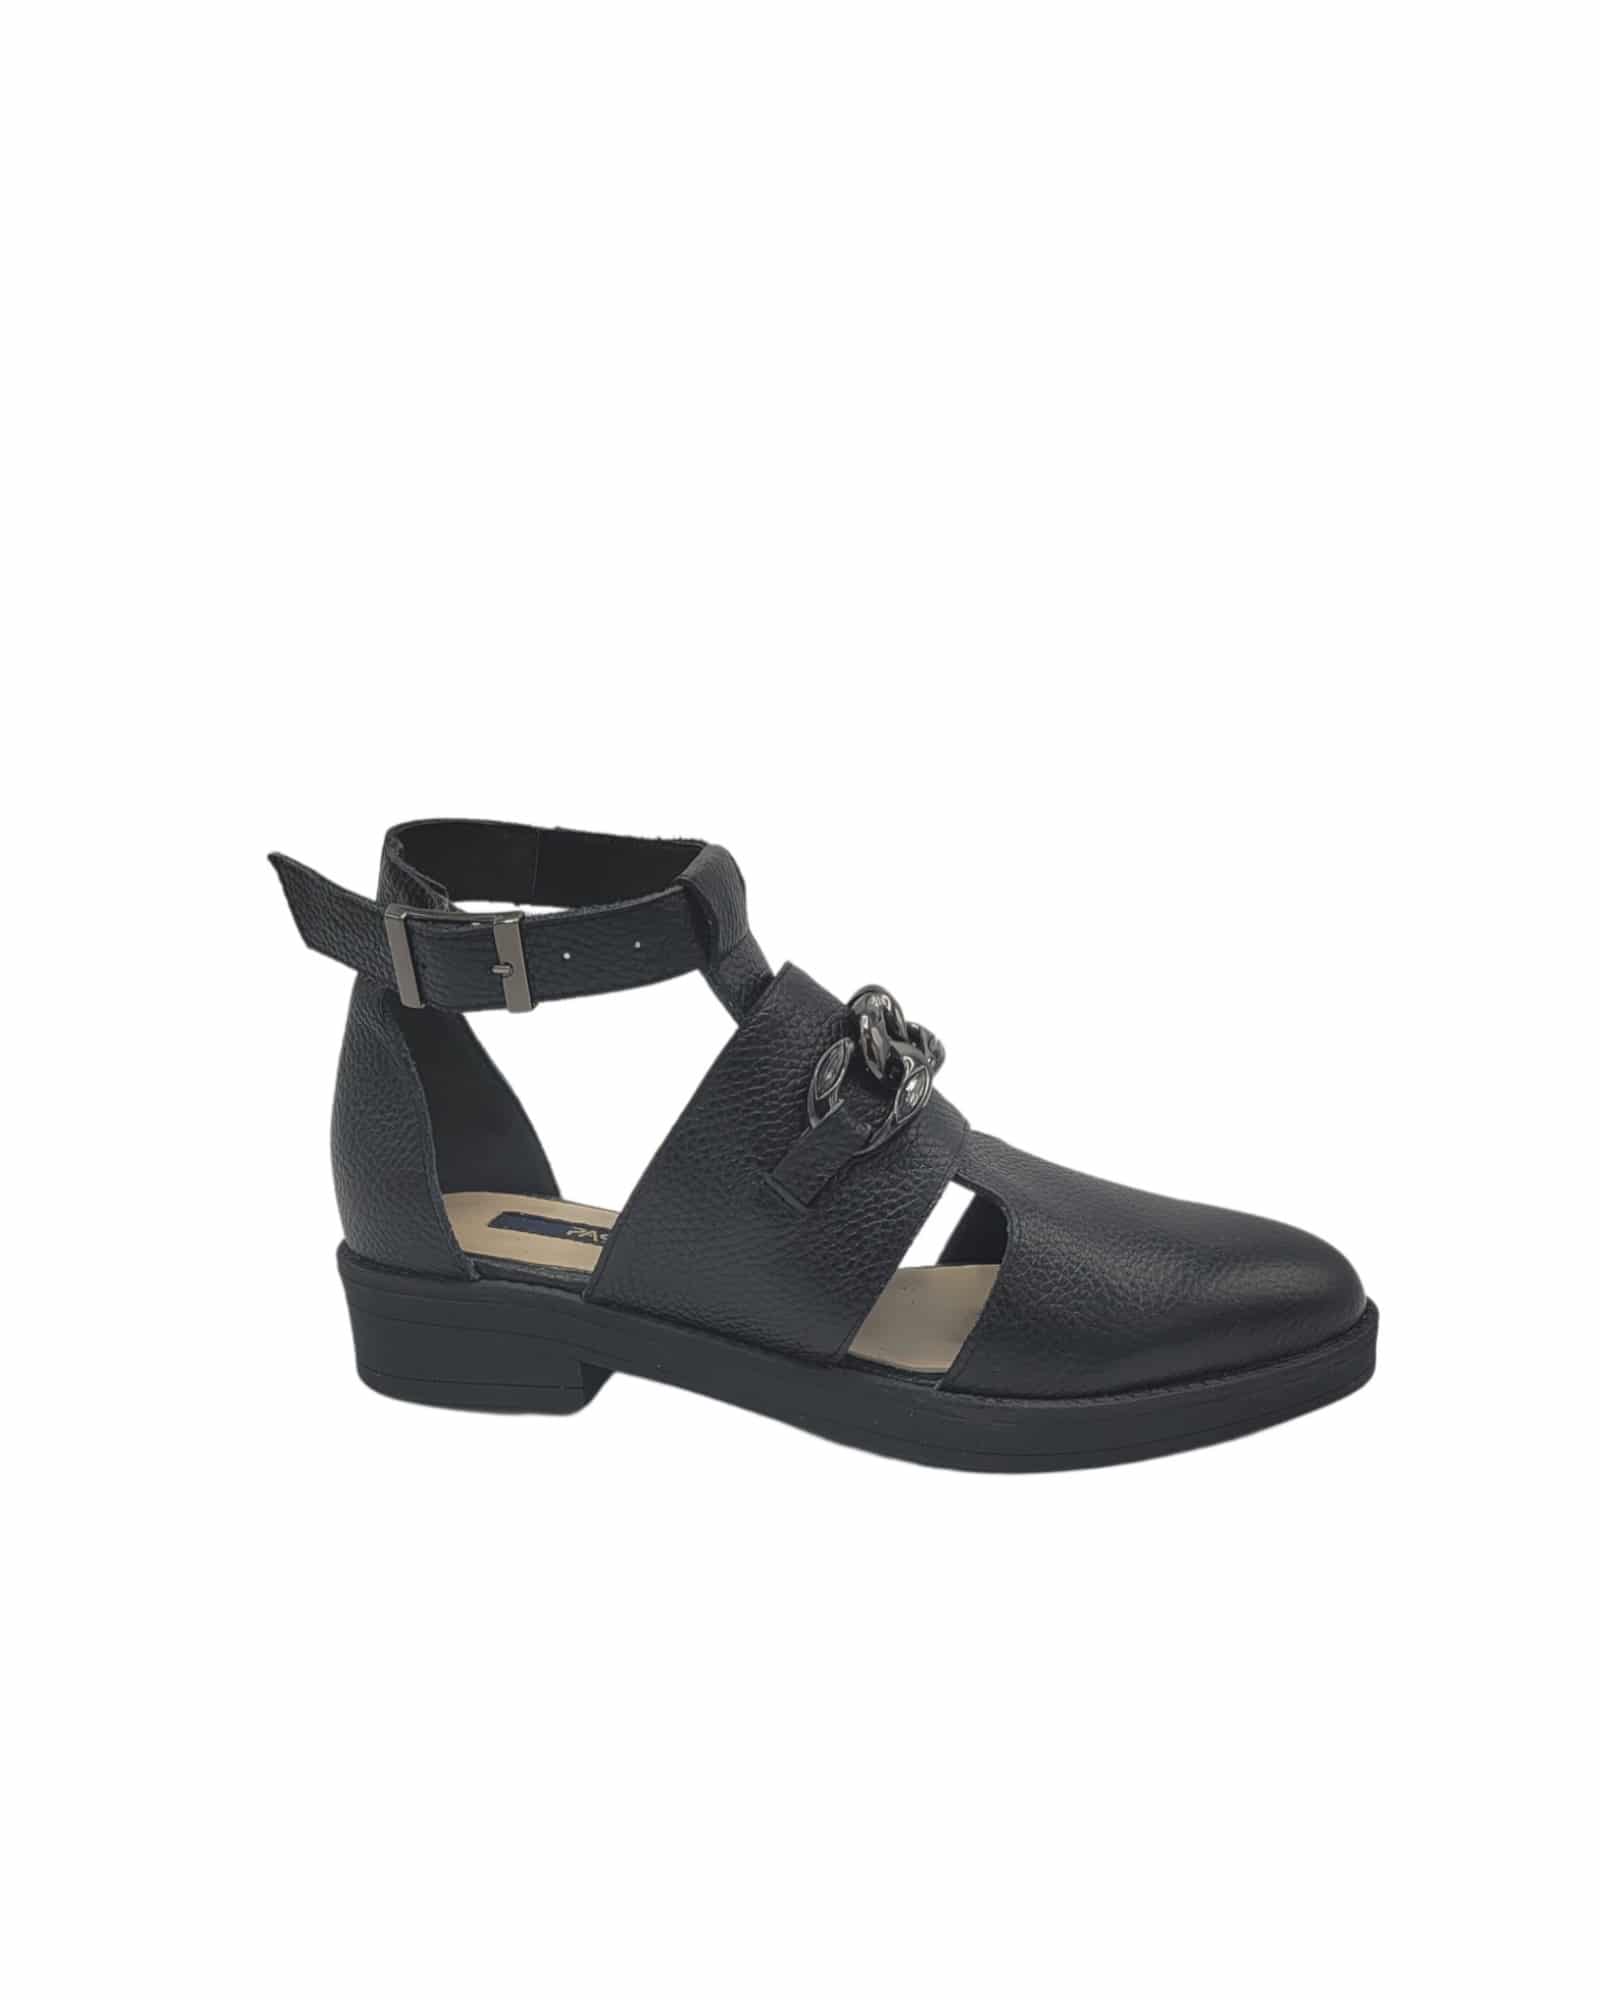 Pantofi trendy cu talpa joasa Ramina Black